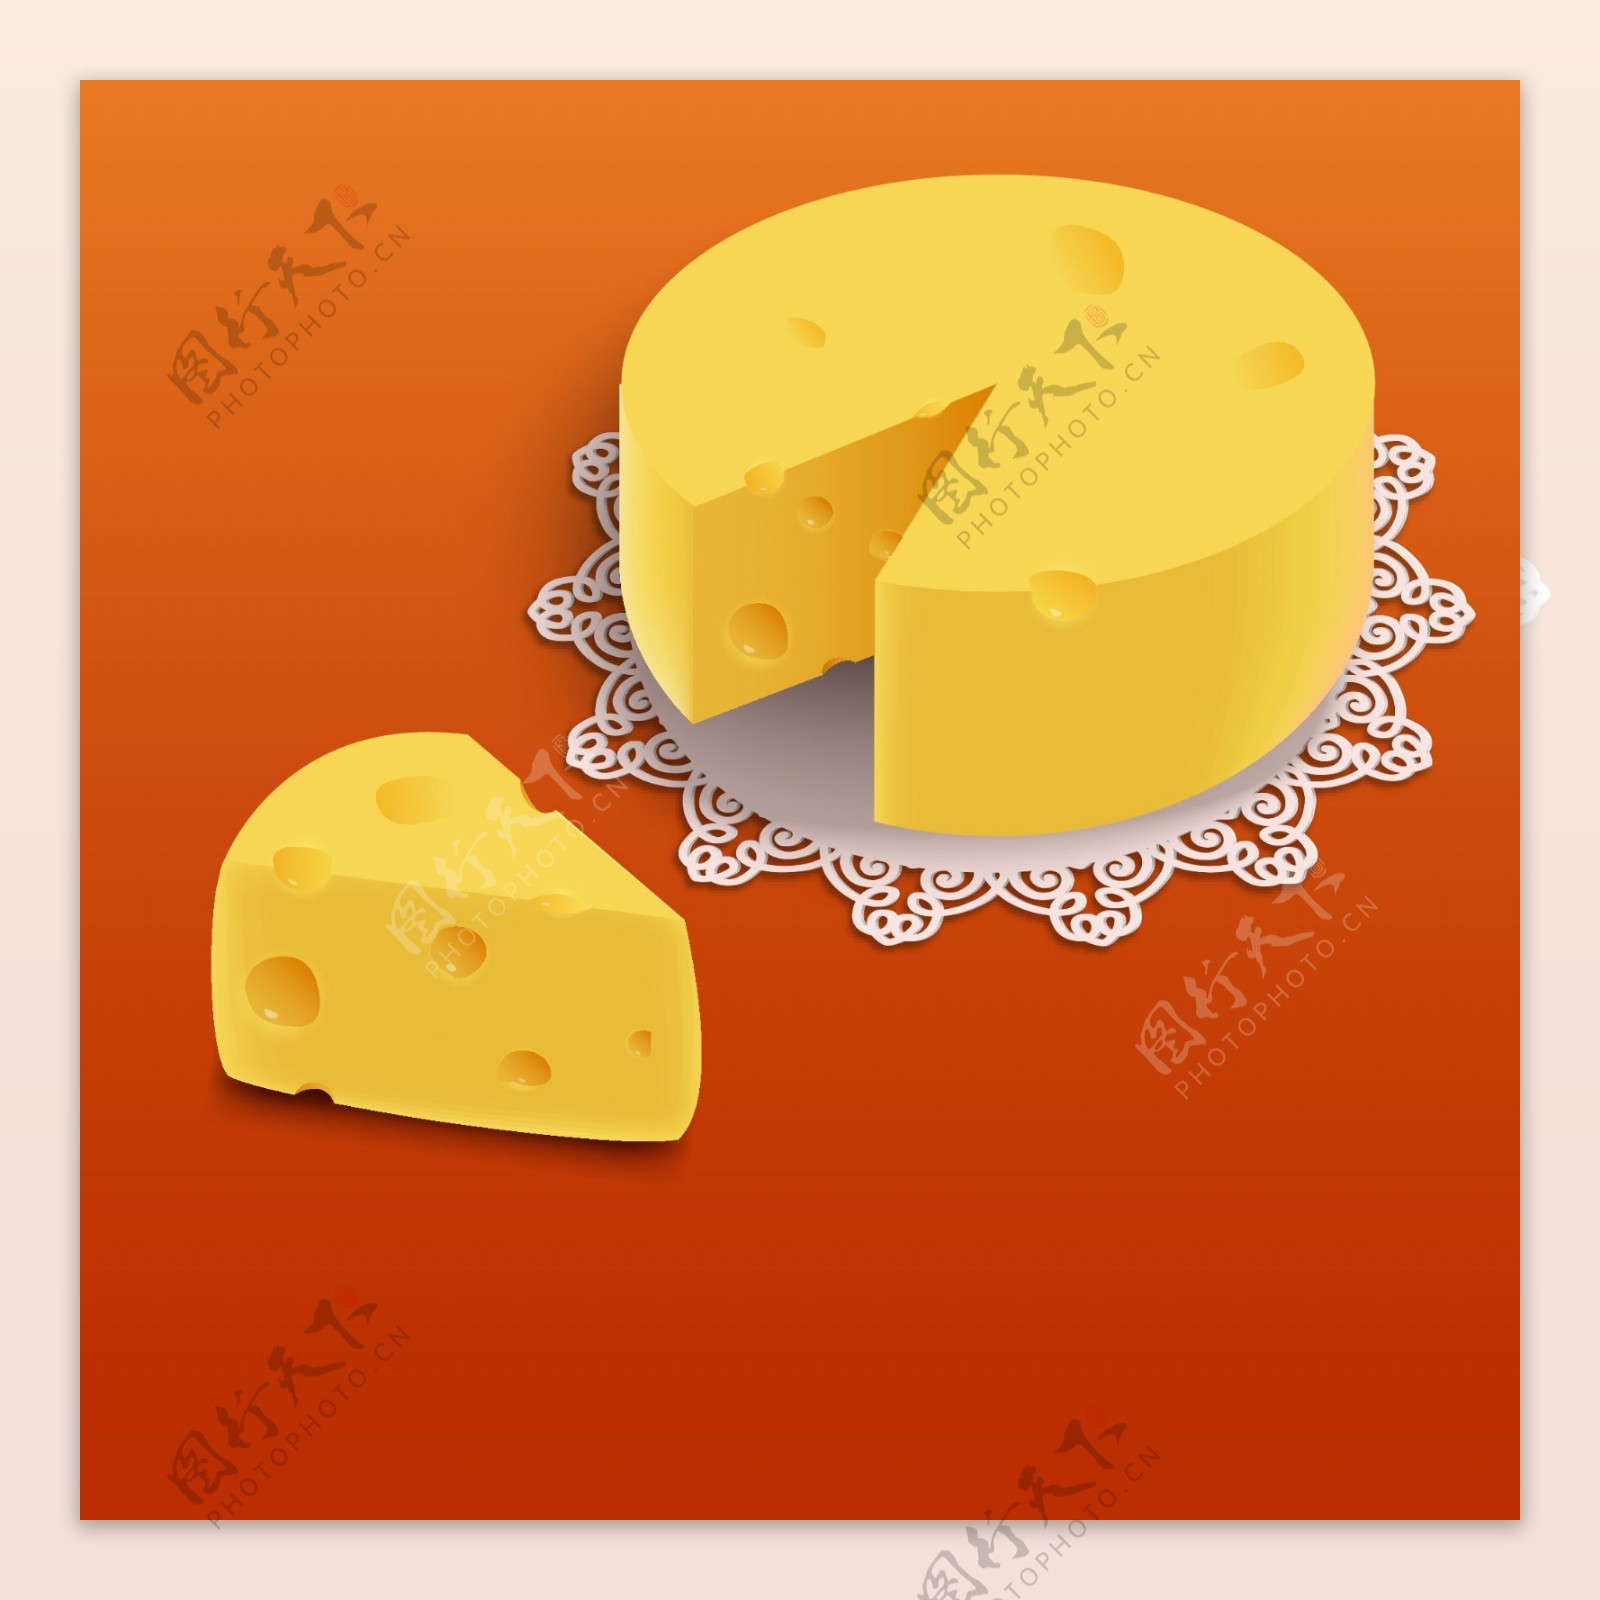 被切开的奶酪绘制